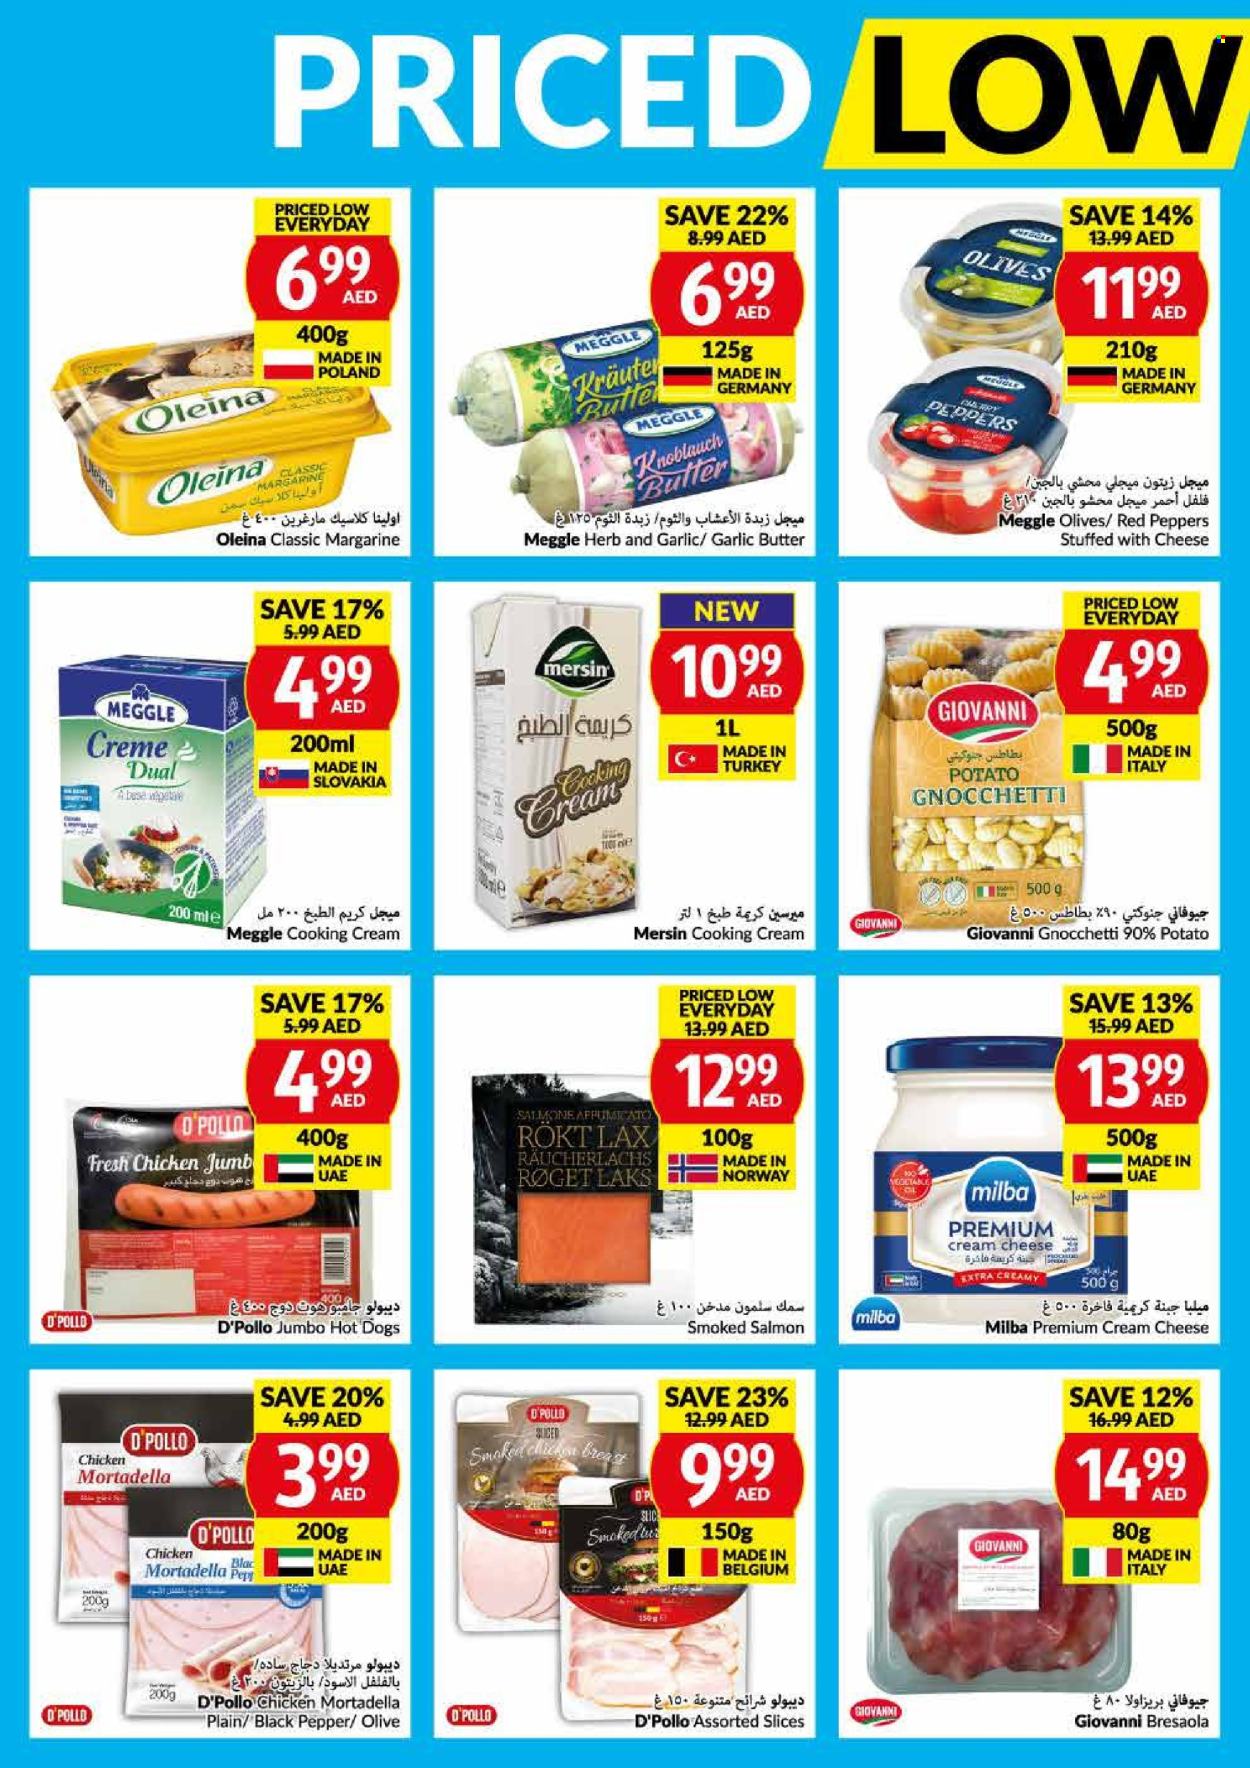 VIVA Supermarket offer - 10/04/2024 - 16/04/2024.